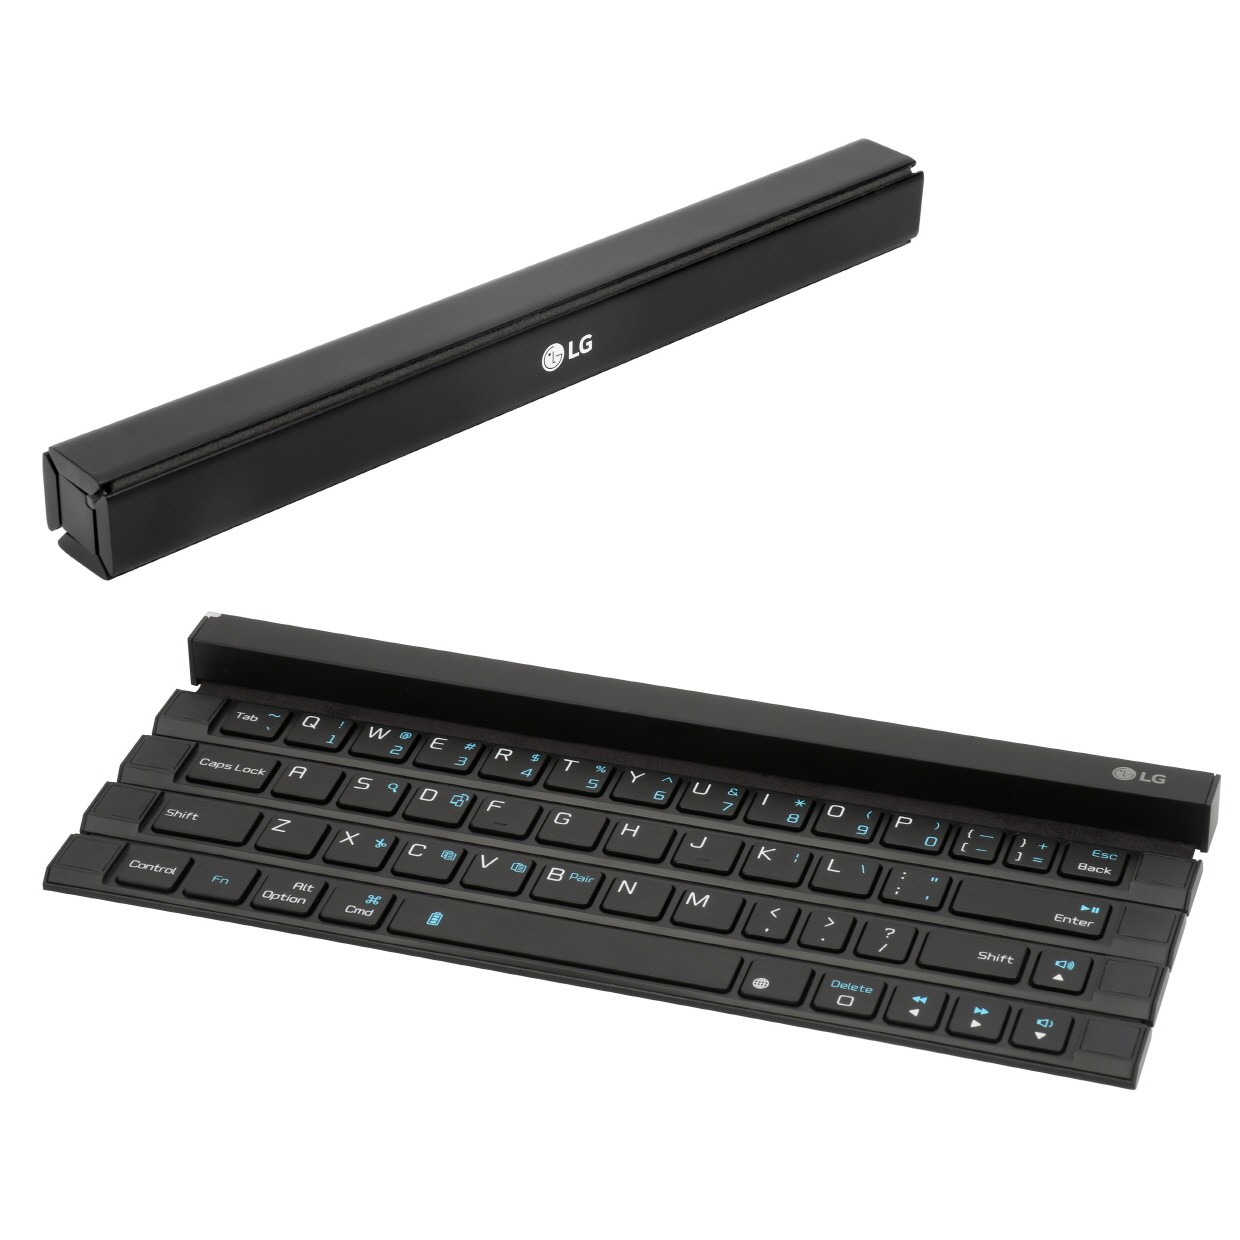 LG-Rolly-Keyboard.jpg